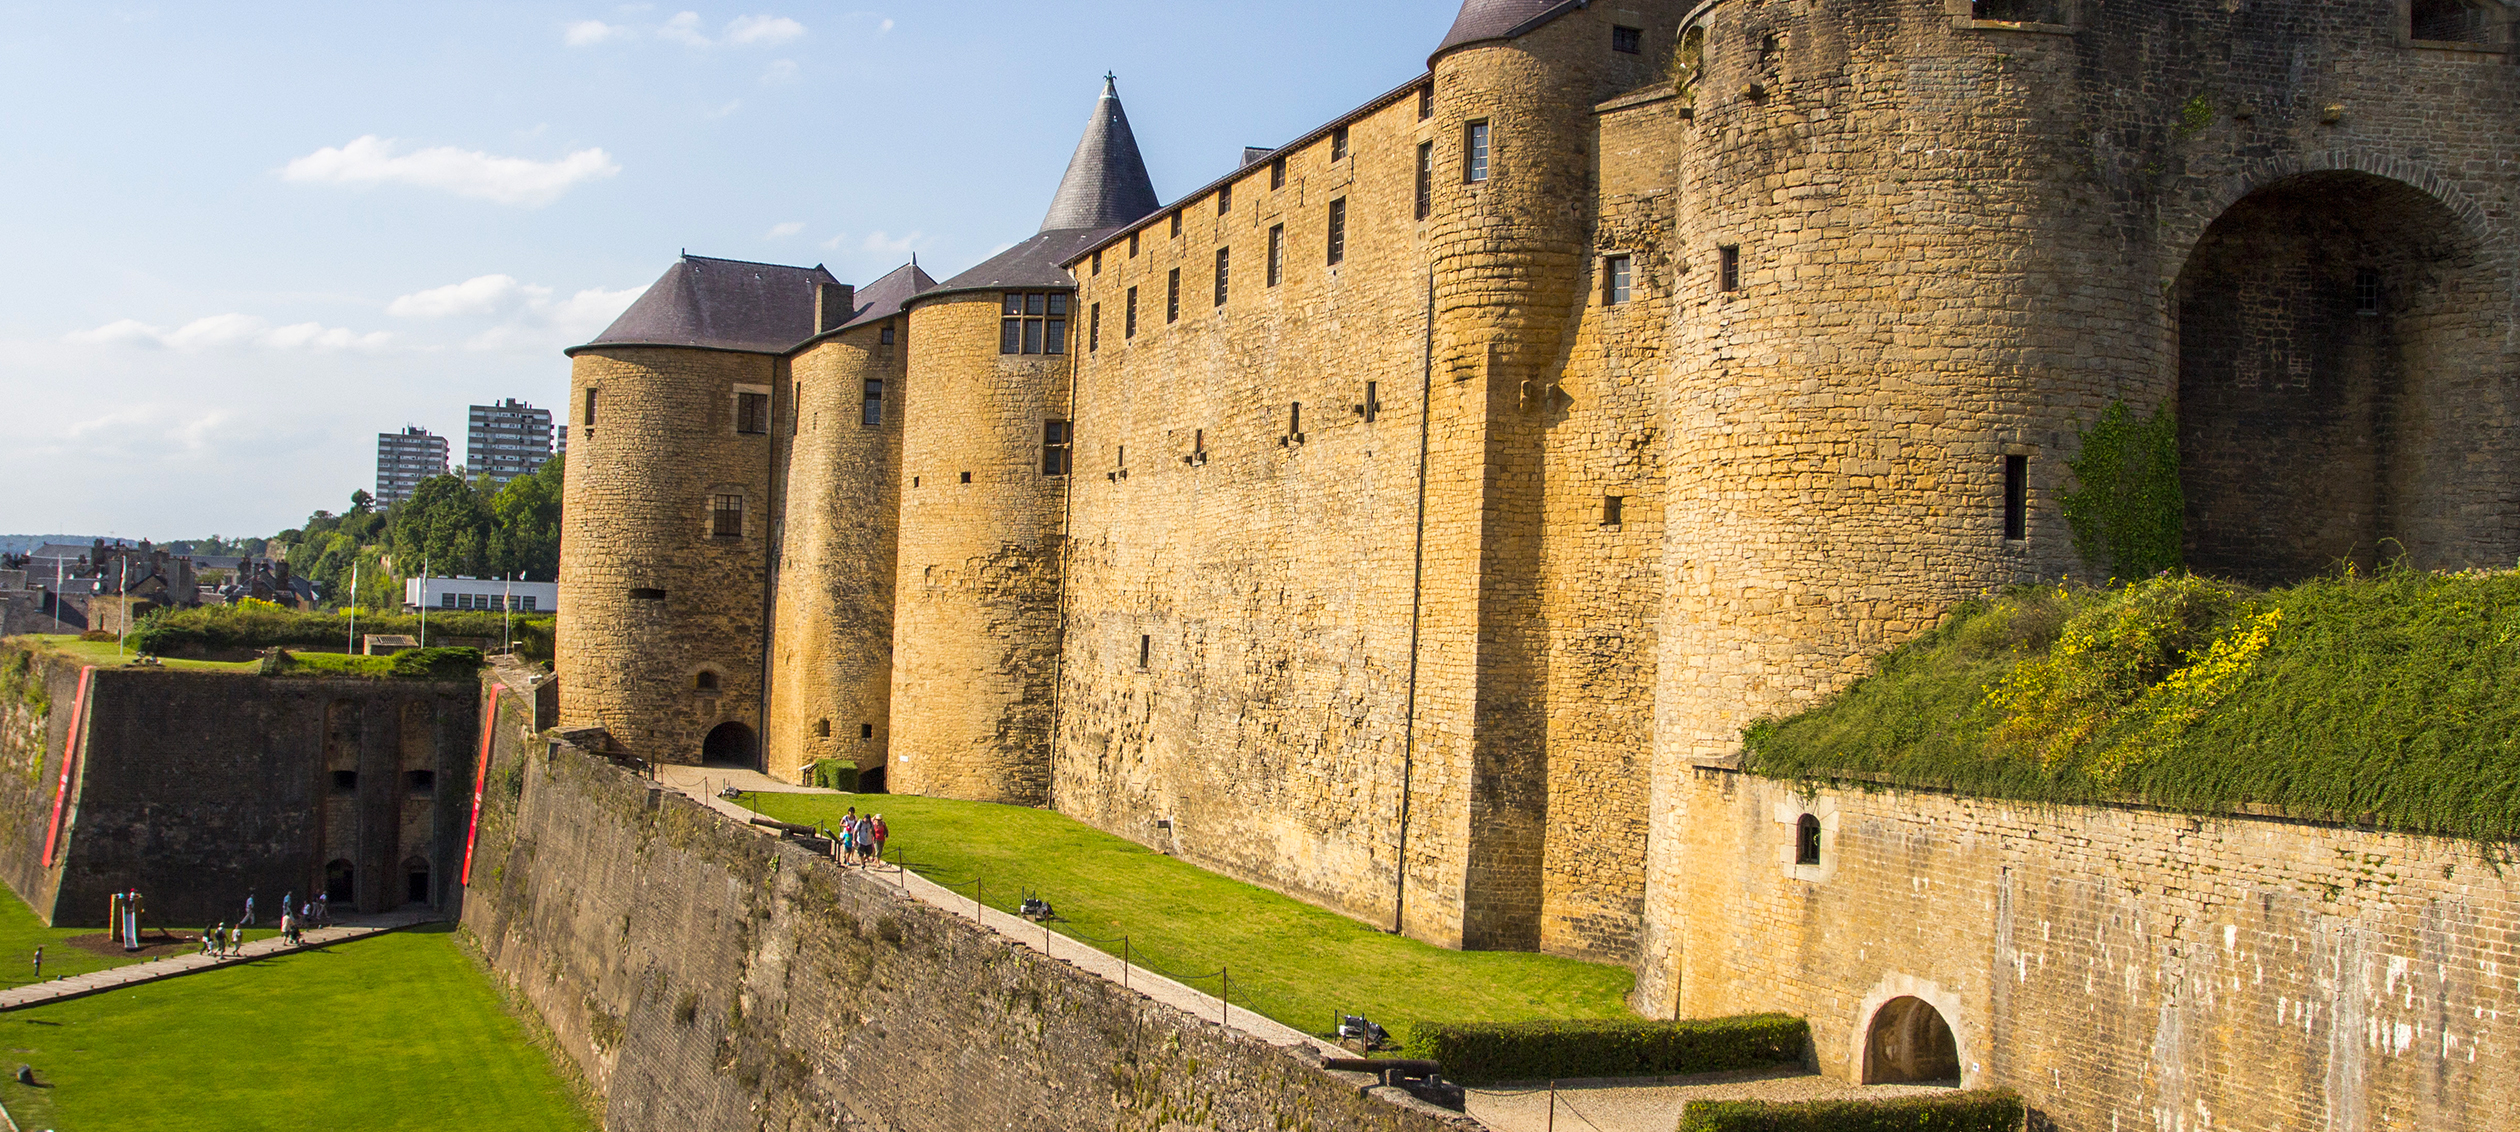 Visite du Château Fort de SedanRemontez le temps pour un voyage à l’époque  médiévale. Au cœur de la ville, le gigantesque Château Fort de Sedan vous